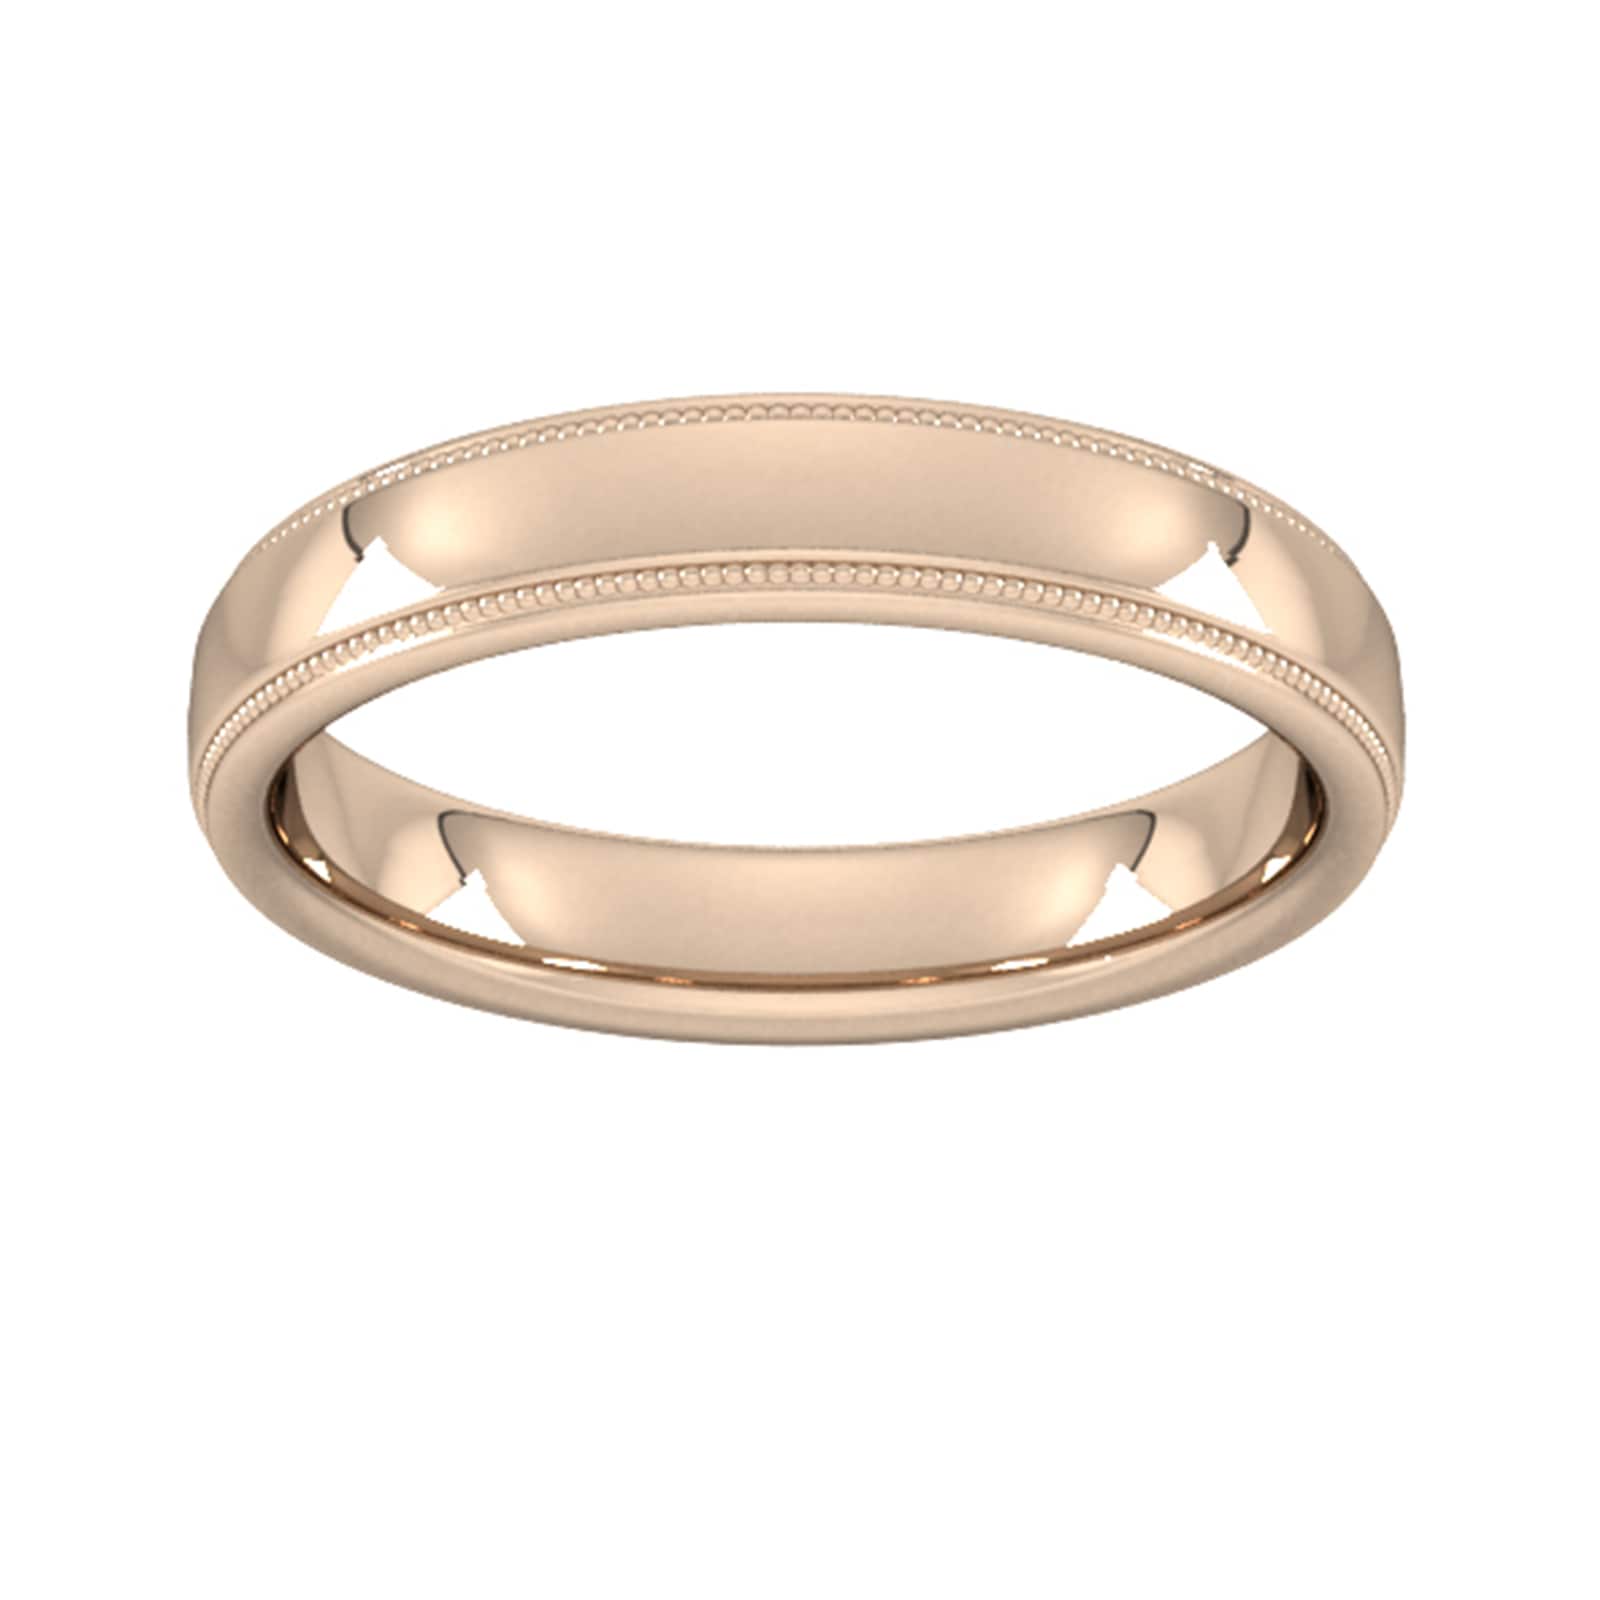 4mm Slight Court Heavy Milgrain Edge Wedding Ring In 9 Carat Rose Gold - Ring Size O